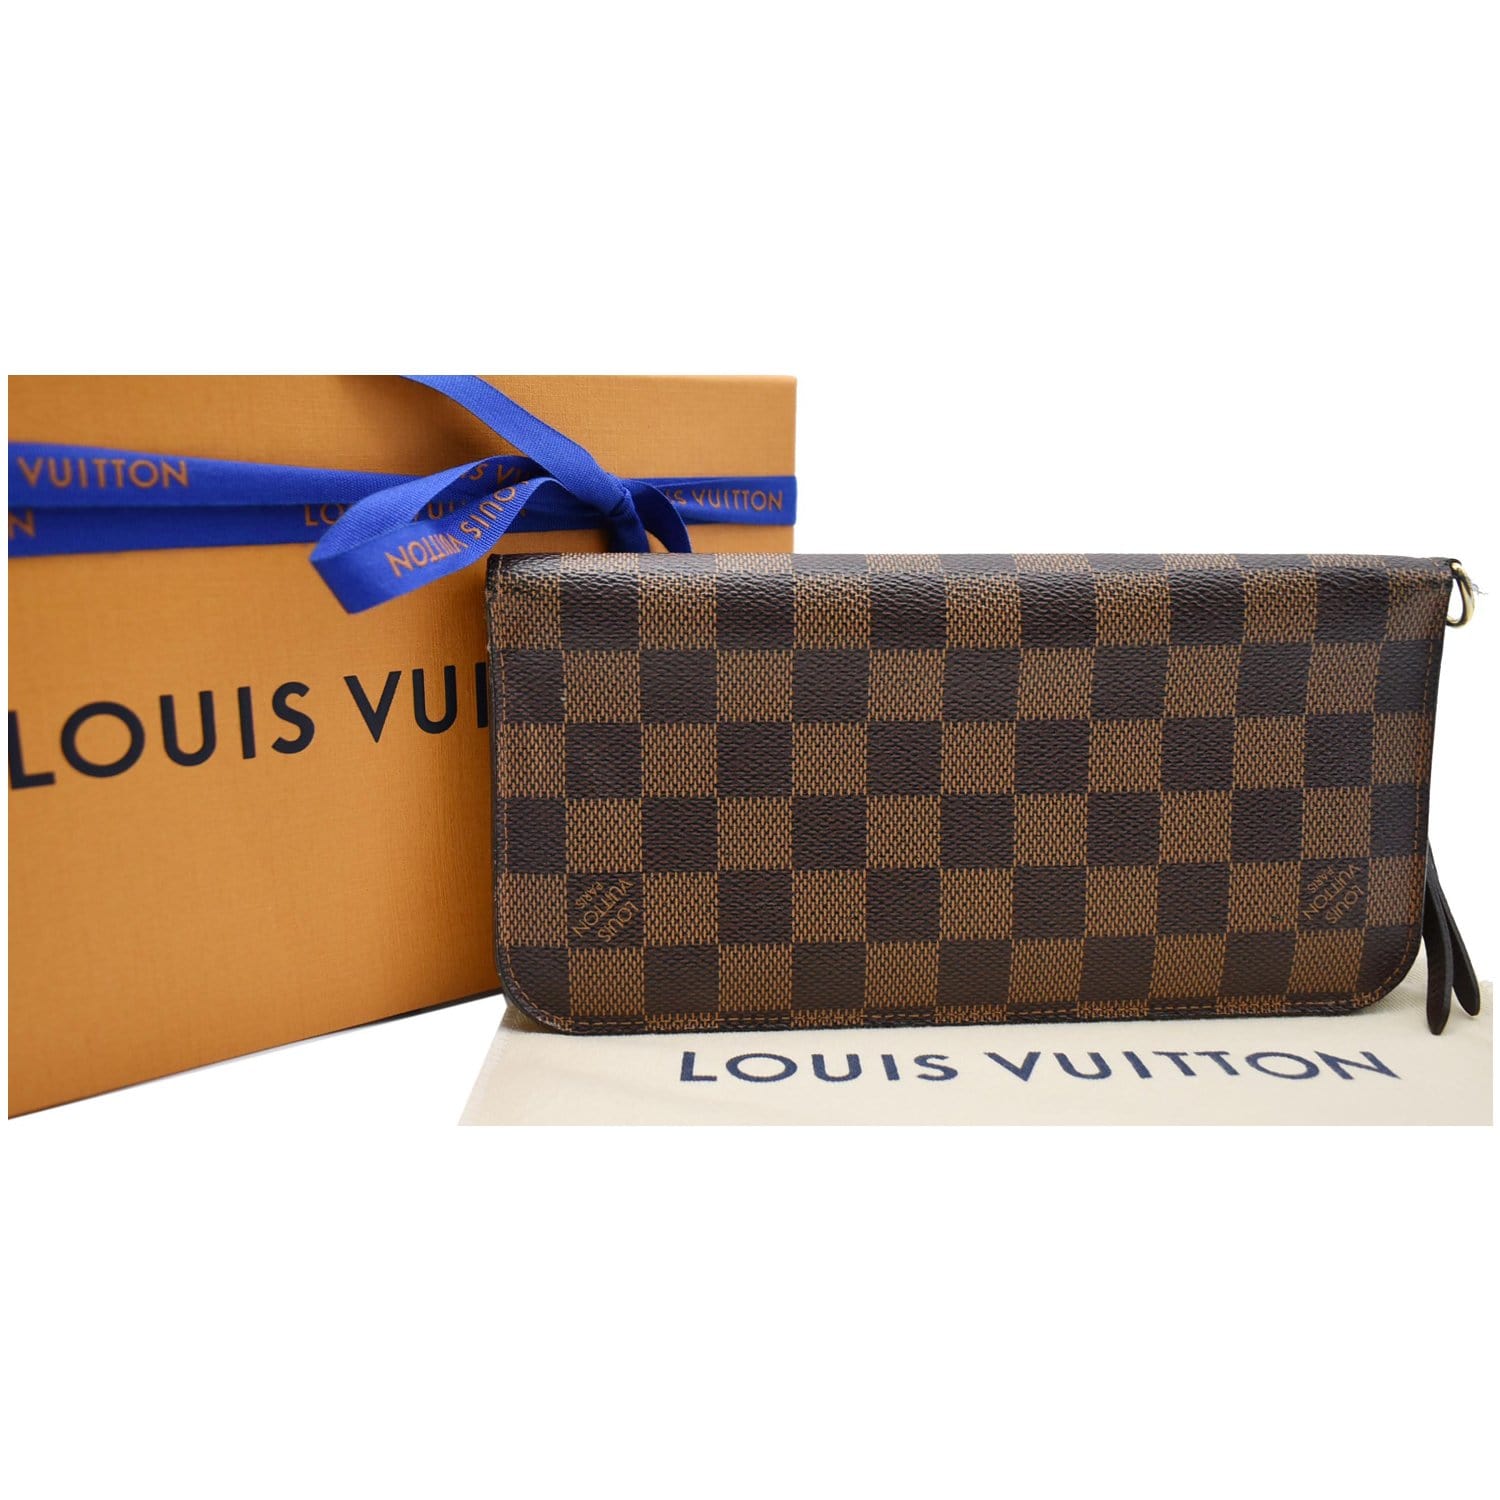 Cofre de Louis Vuitton comestible!! 🤣🤣🤣